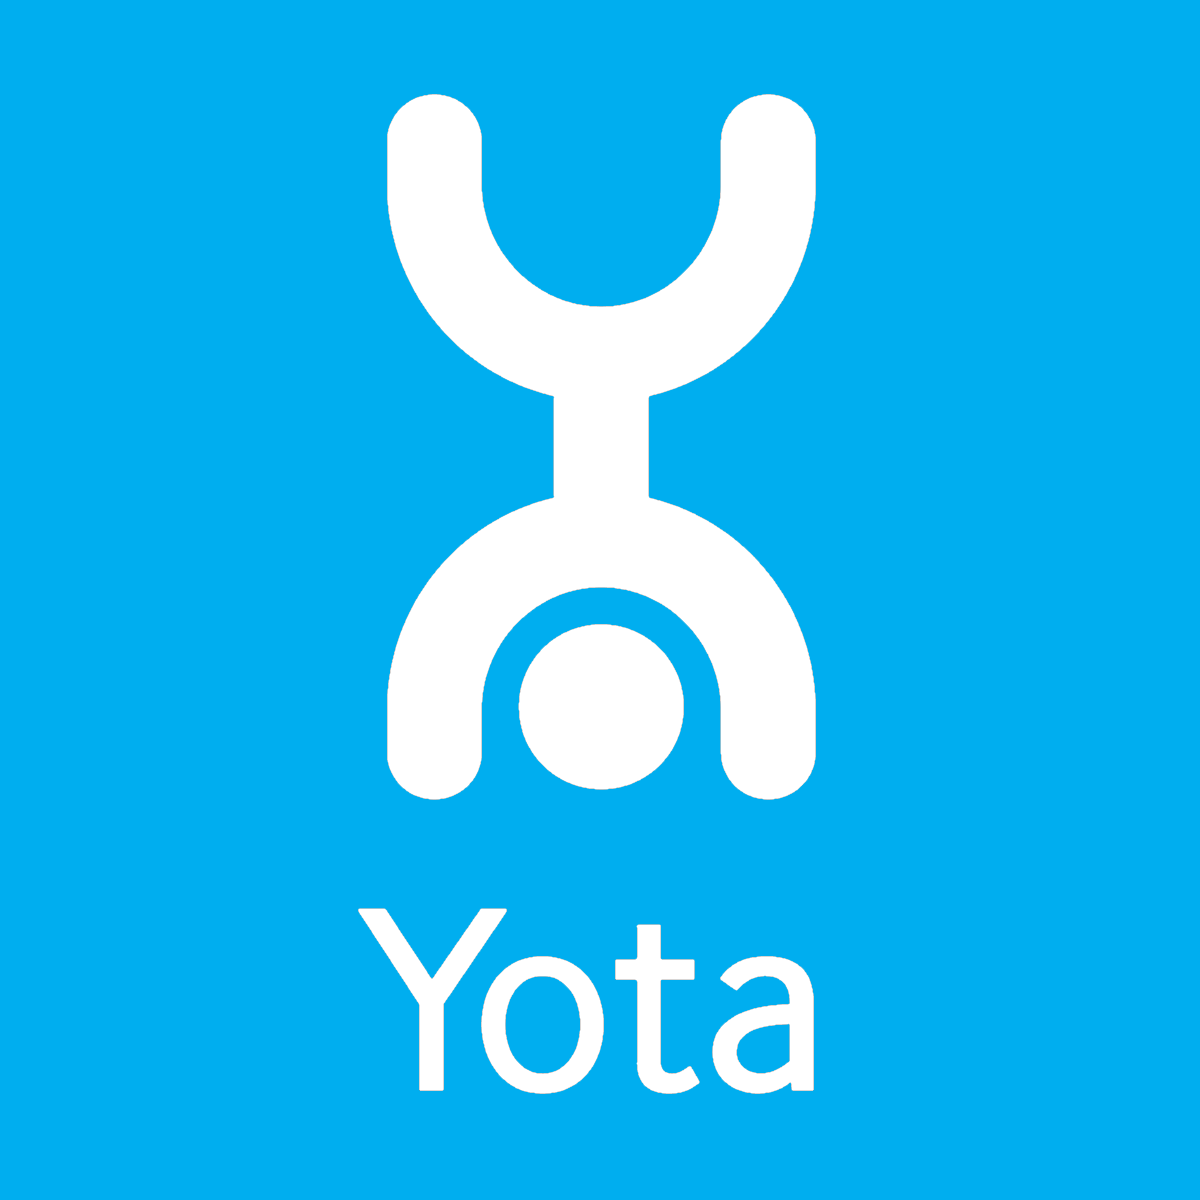 Yota busy life. Йота. Команды Yota. Игрушка Yota. Оптимальный 200 йота.